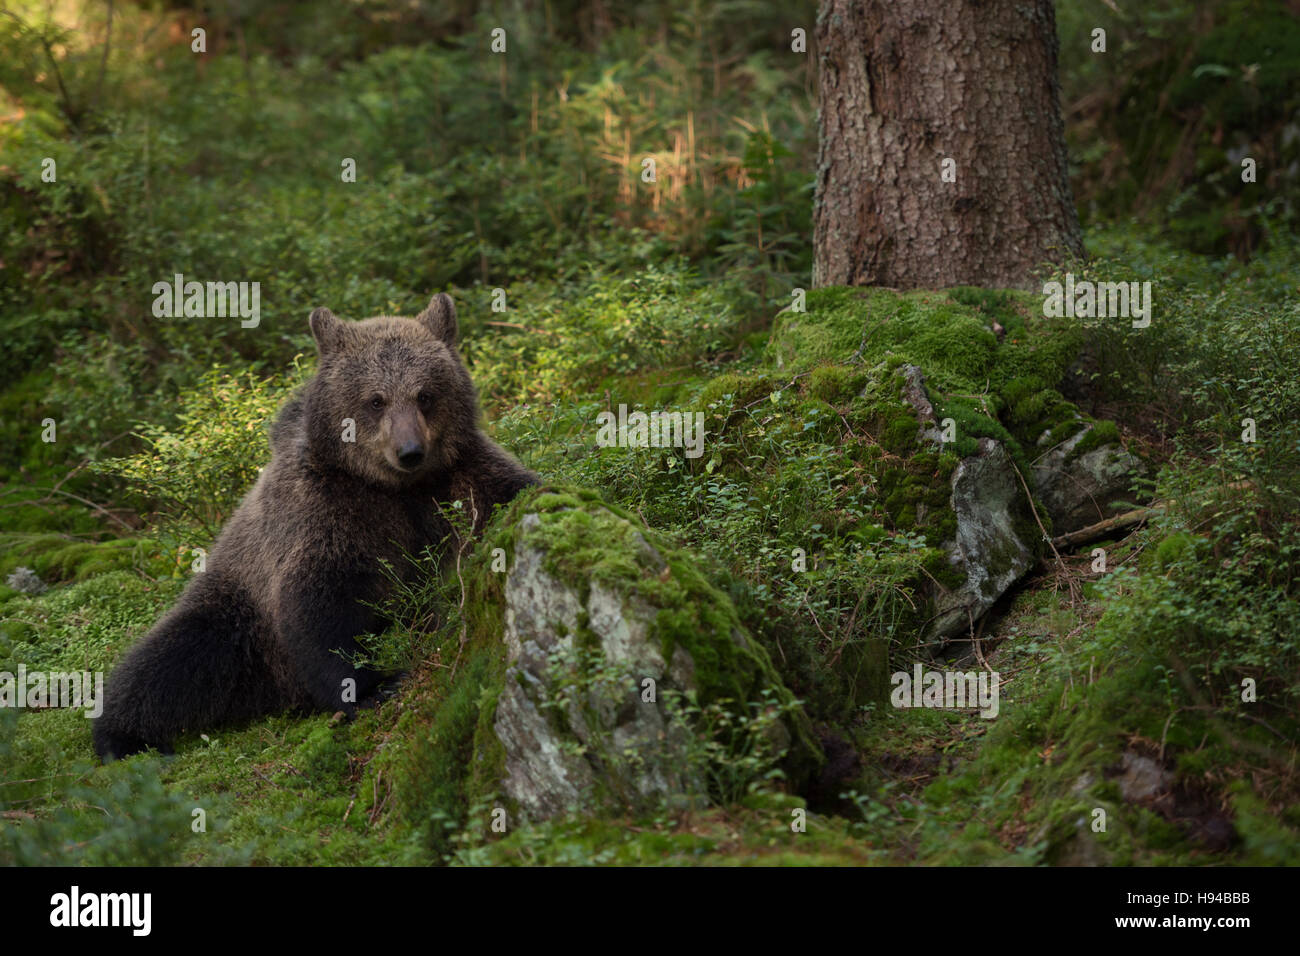 Ours brun européen / Braunbaer ( Ursus arctos ), jeune animal, ludique cub, assis dans les sous-bois d'une forêt, mignon. Banque D'Images